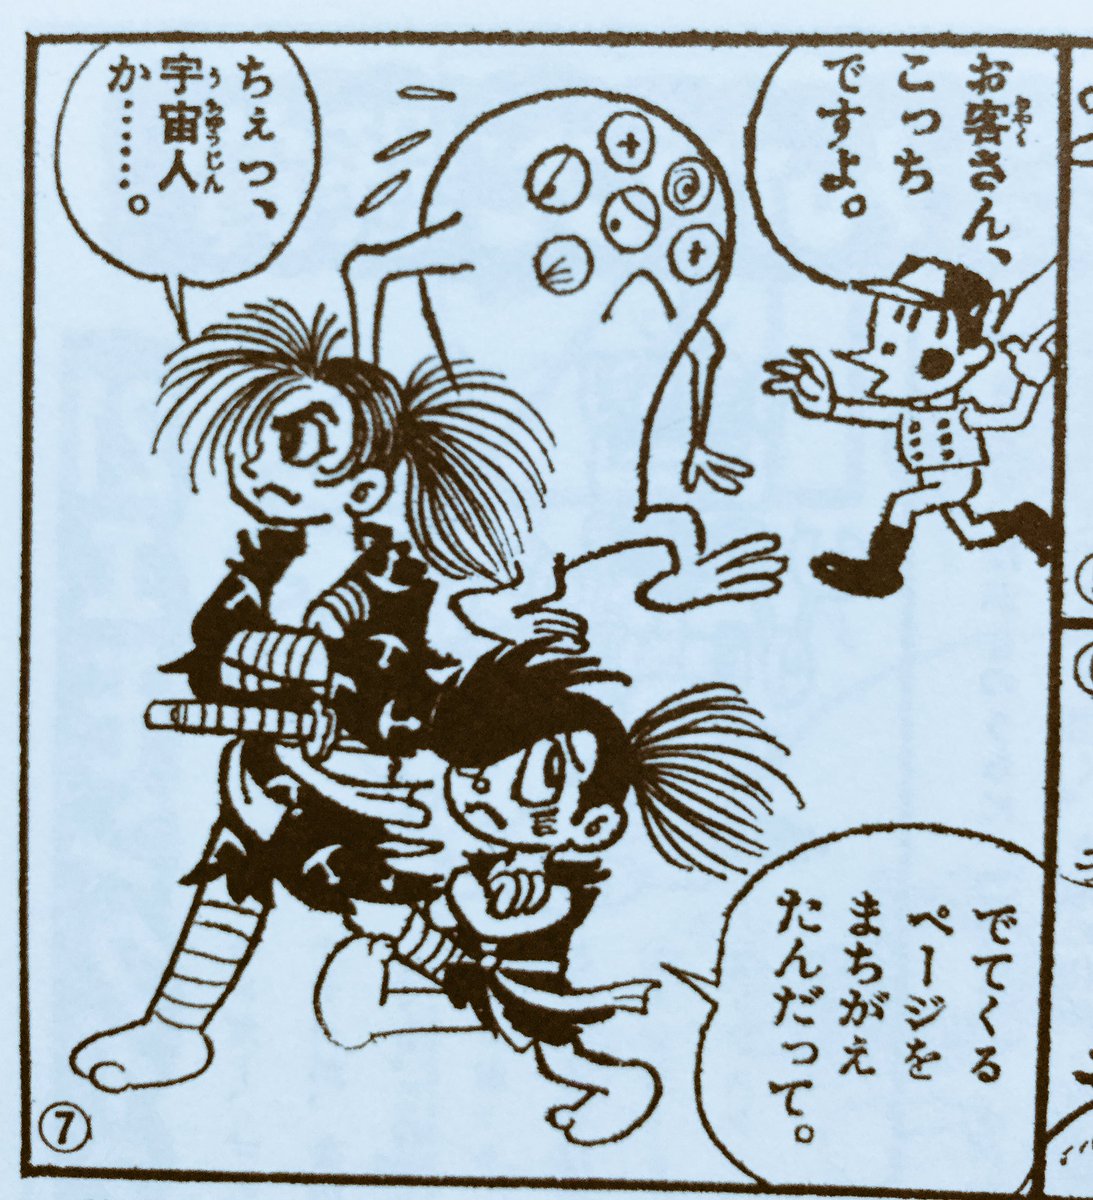 白銀 En Twitter どろろ が約50年ぶりのテレビアニメ化 50年前というと 藤子先生が21エモンとのパロディ漫画を企画ページで描かれていたなあ